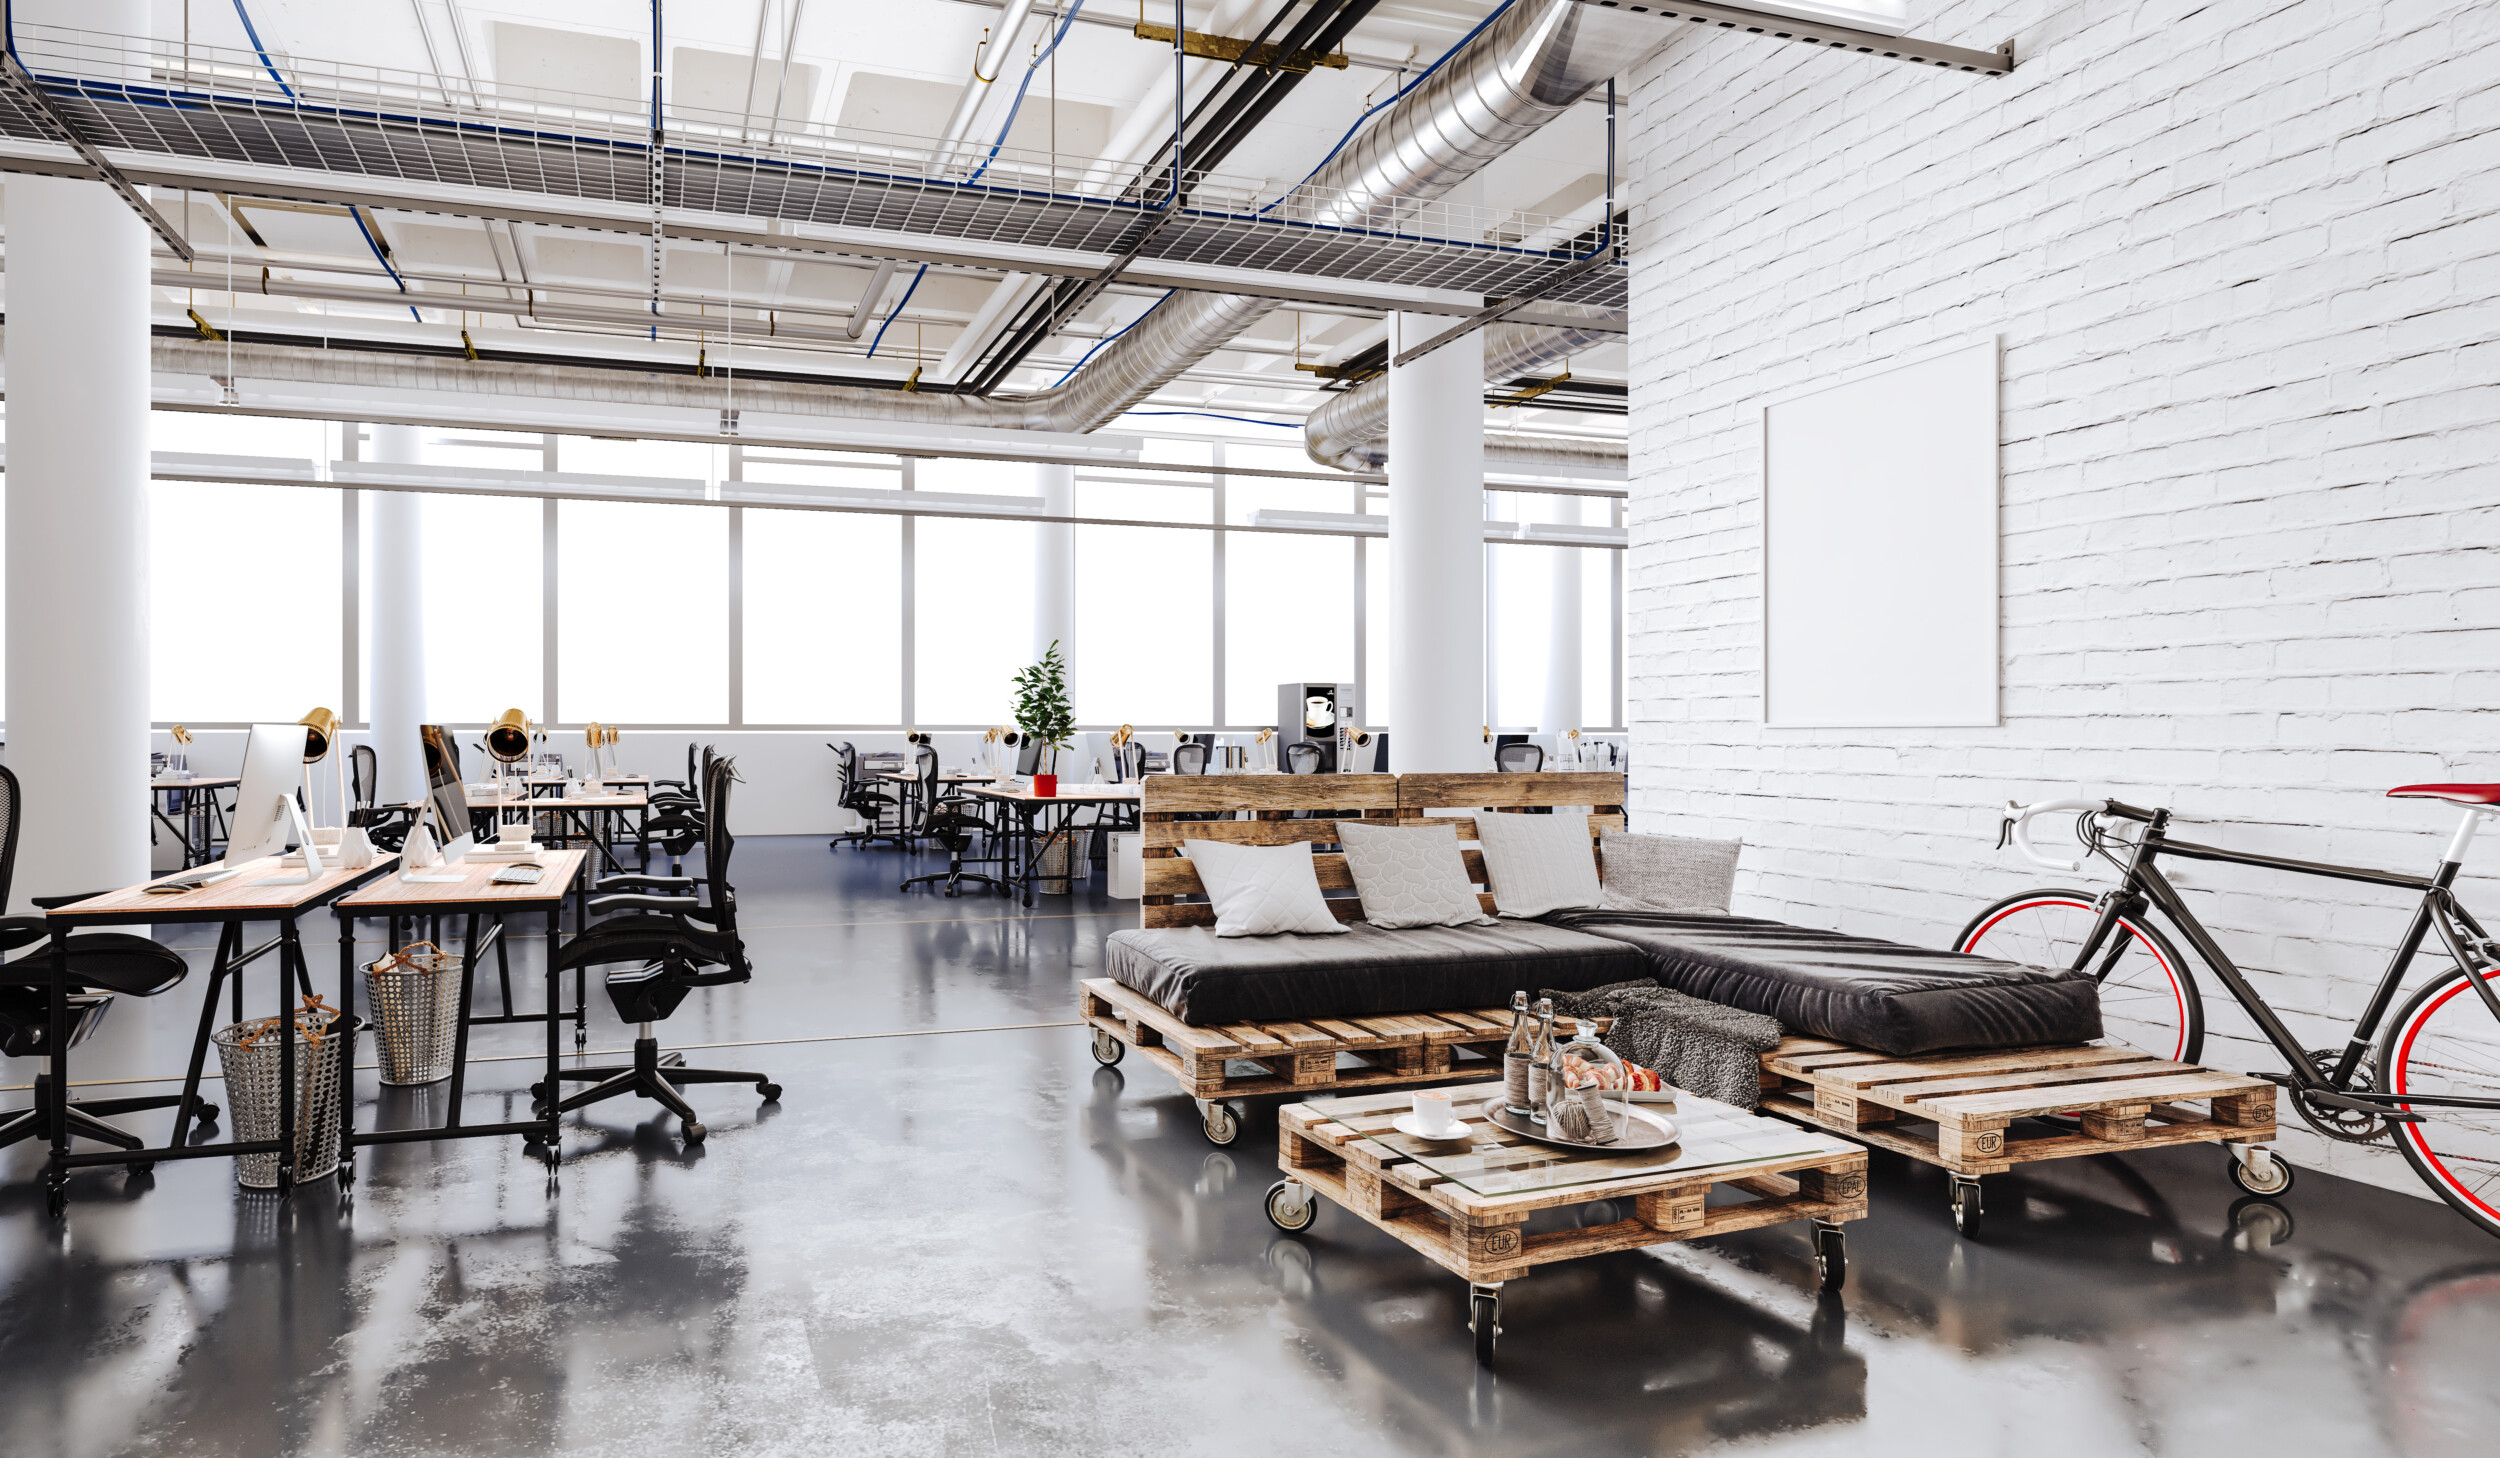 74 Office Decor Ideas – Make Your Workplace Fun, Productive & Creative -  InteriorZine